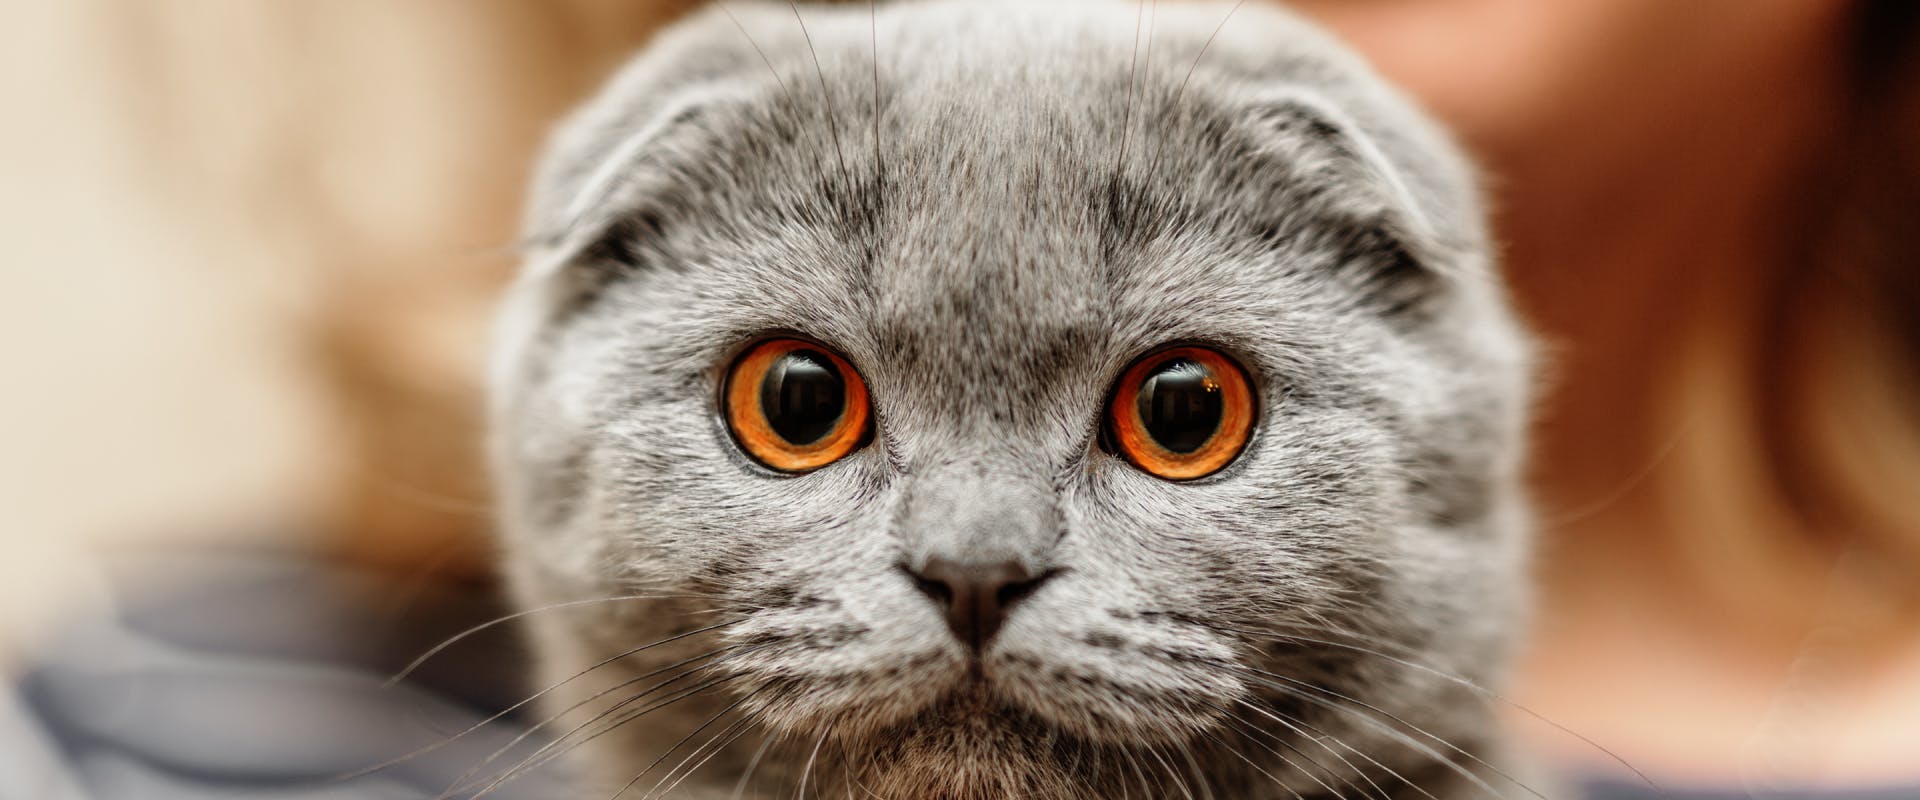 gray scottish fold cat with orange eyes